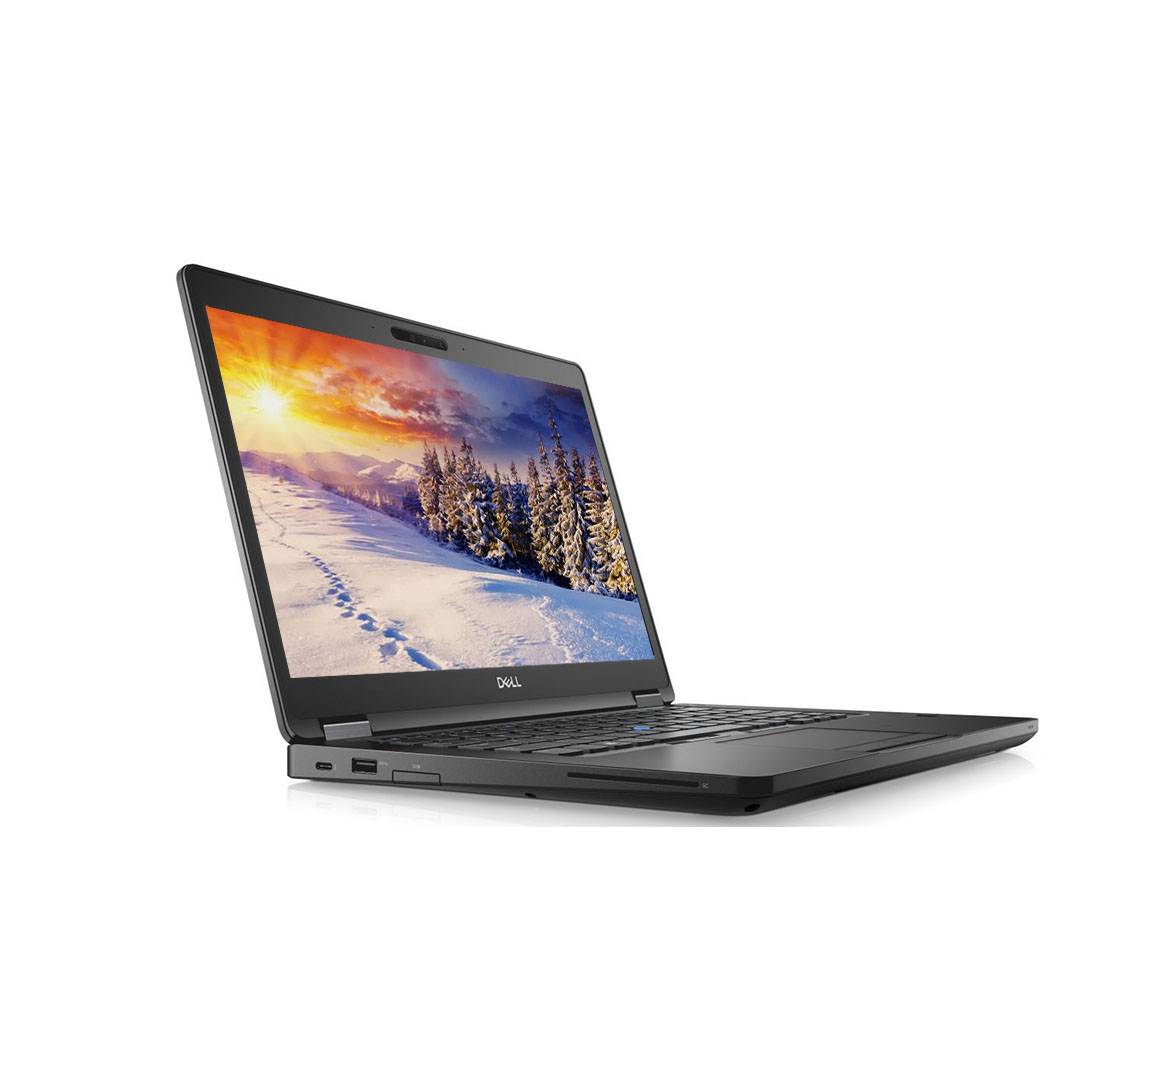 Dell Latitude E5490 Business Laptop, Intel Core i5-7th Gen CPU, 8GB RAM, 256GB SSD, 14 inch Display, Windows 10 Pro